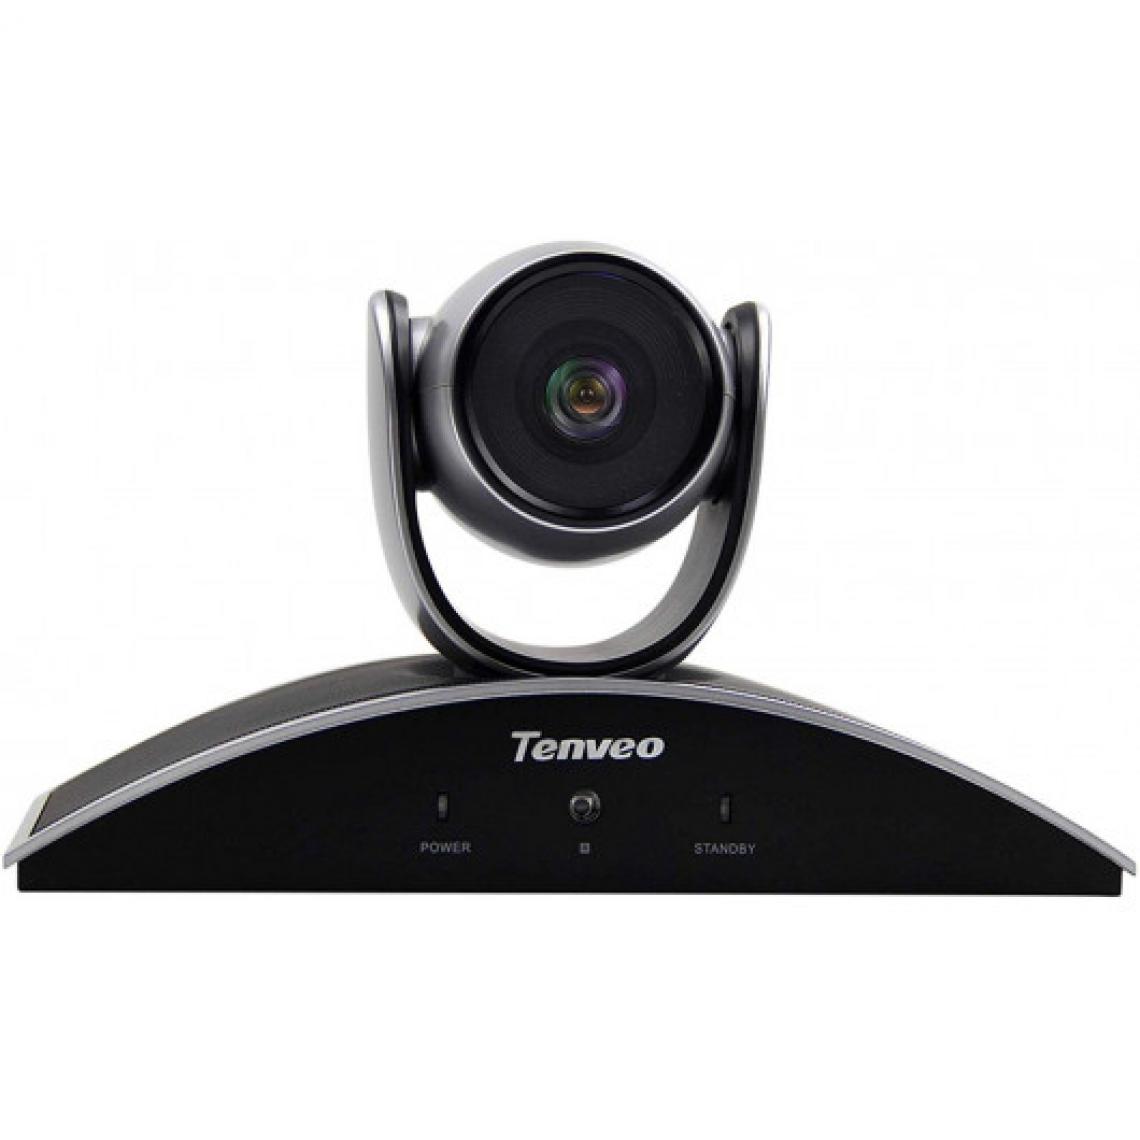 Tenveo - Tenveo X3 Video Conference Camera, la caméra 1080p - Caméra de surveillance connectée